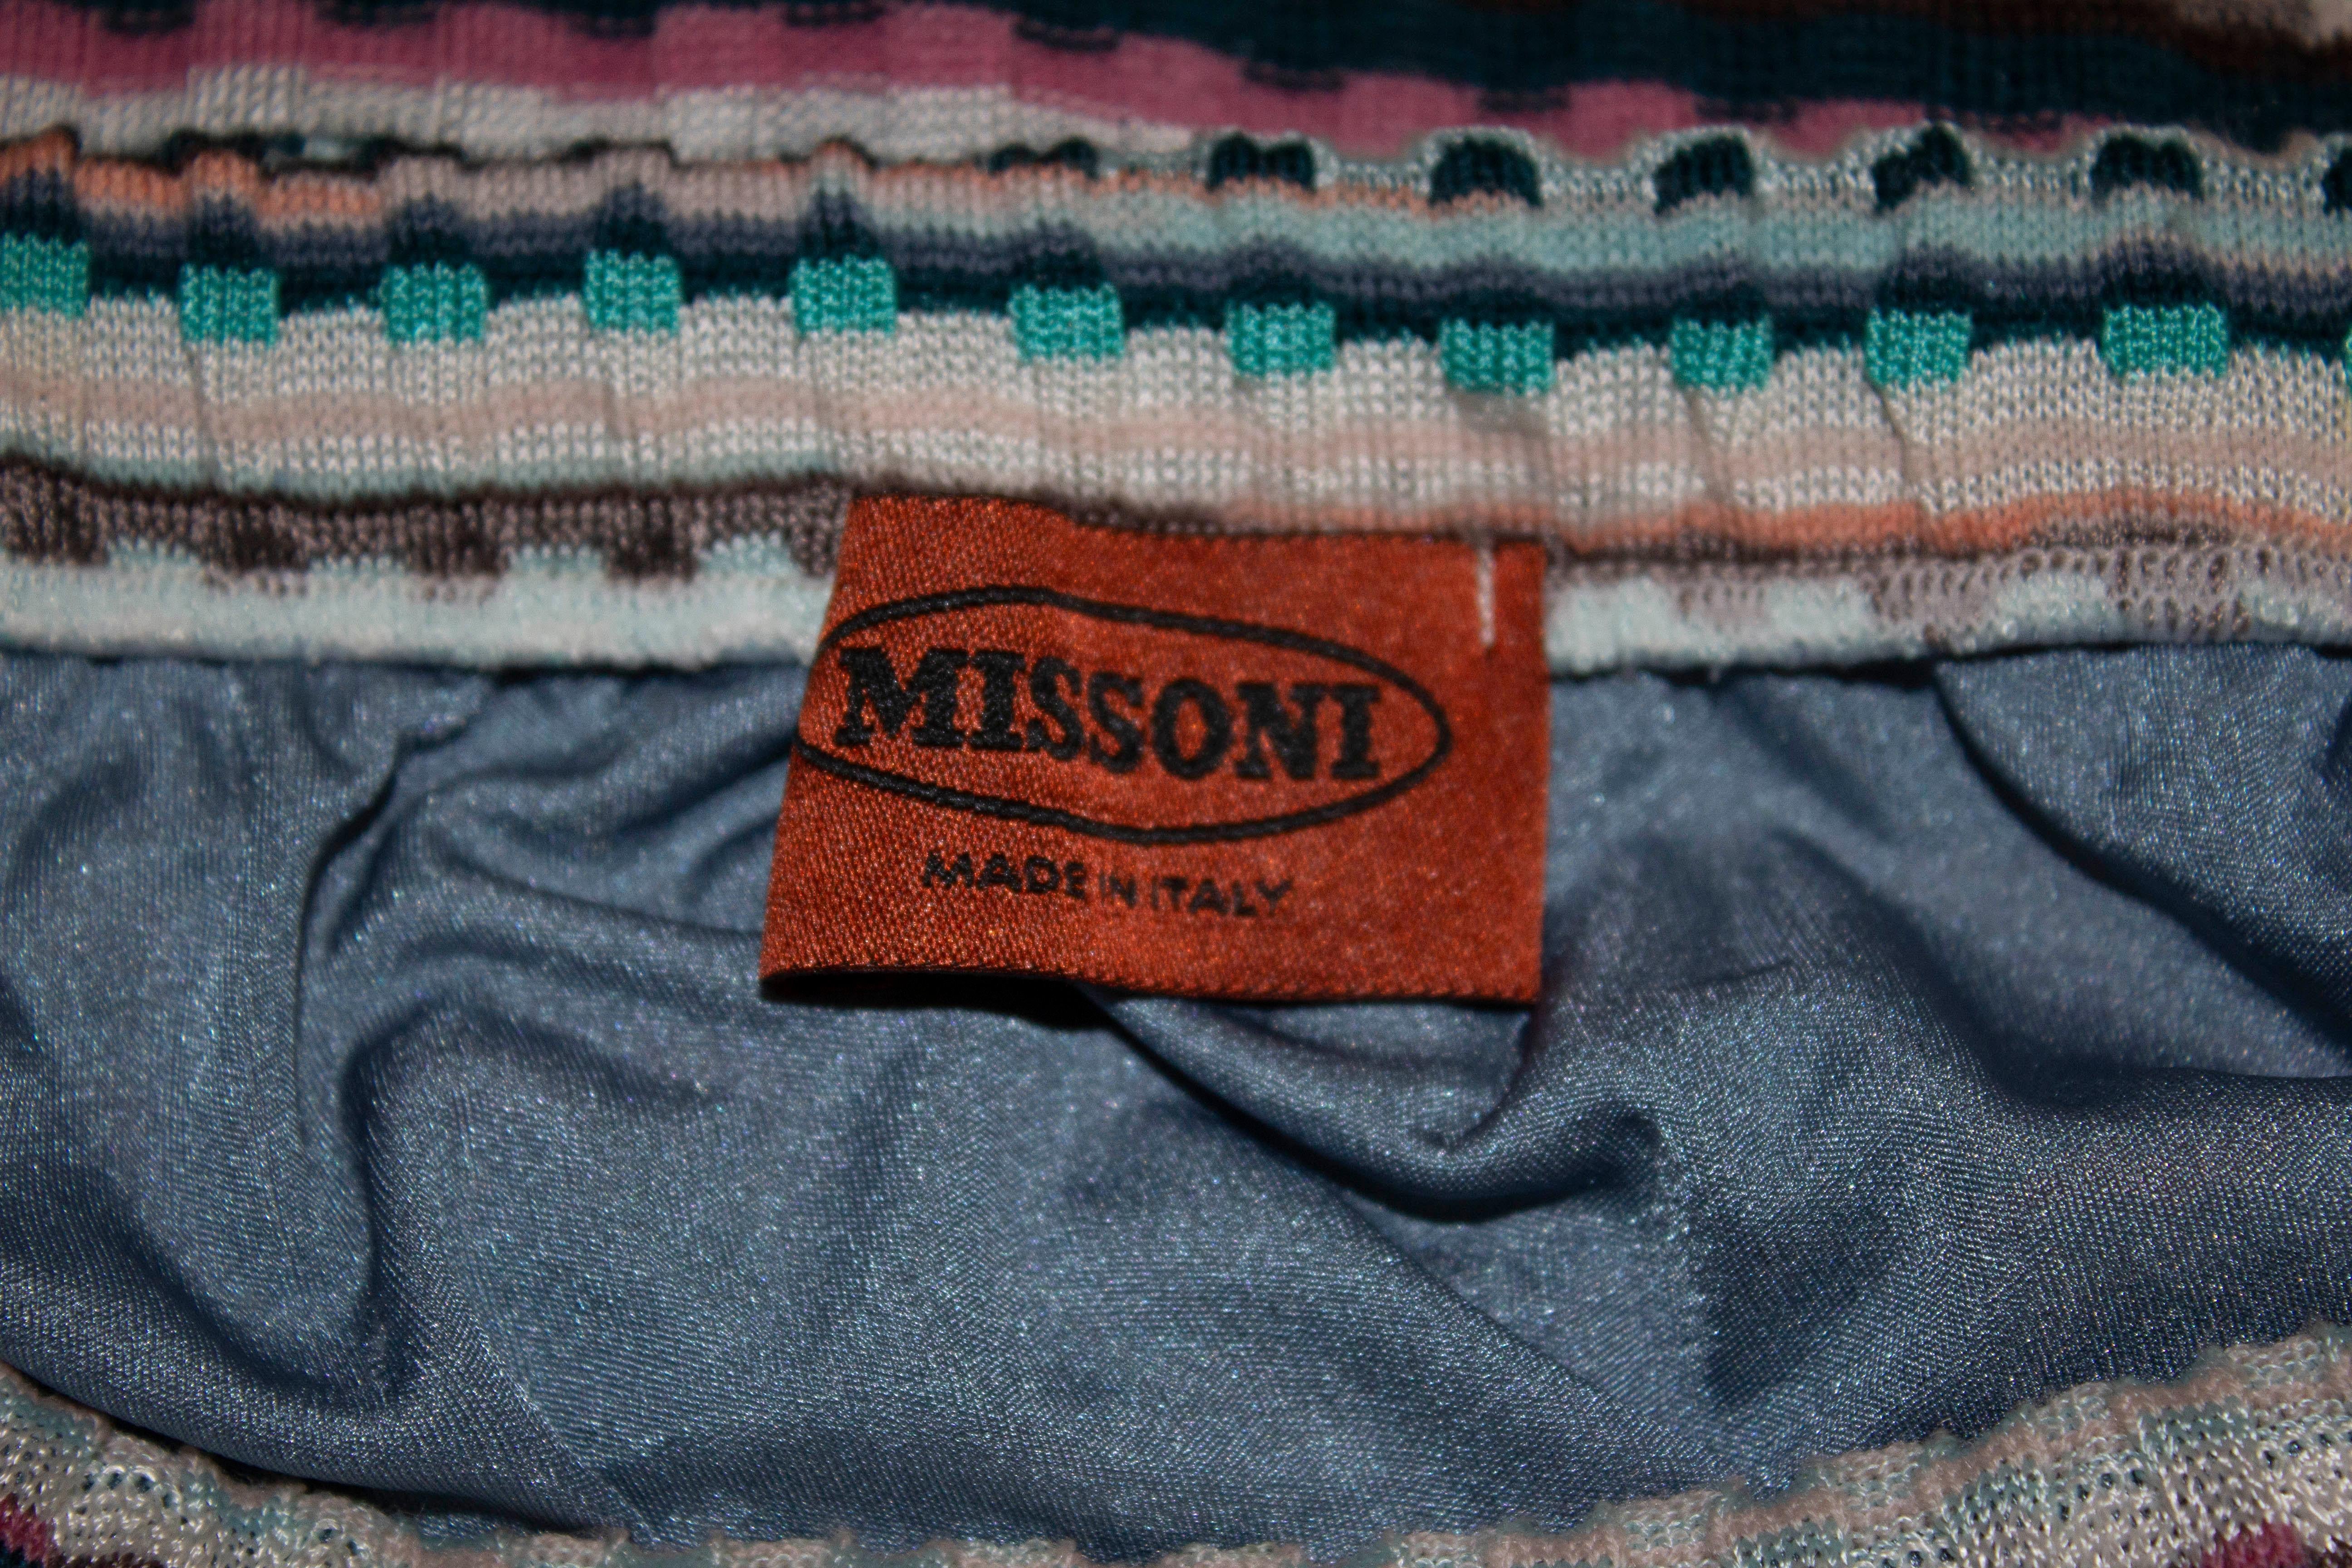 Une jolie jupe courte pour l'été par Missoni.  Dans un mélange de couleurs turquoise, grises et roses, la jupe présente un joli motif tricoté et est entièrement doublée. 
Il a une taille élastiquée et s'adapte à une taille de 25'' - 29'', longueur